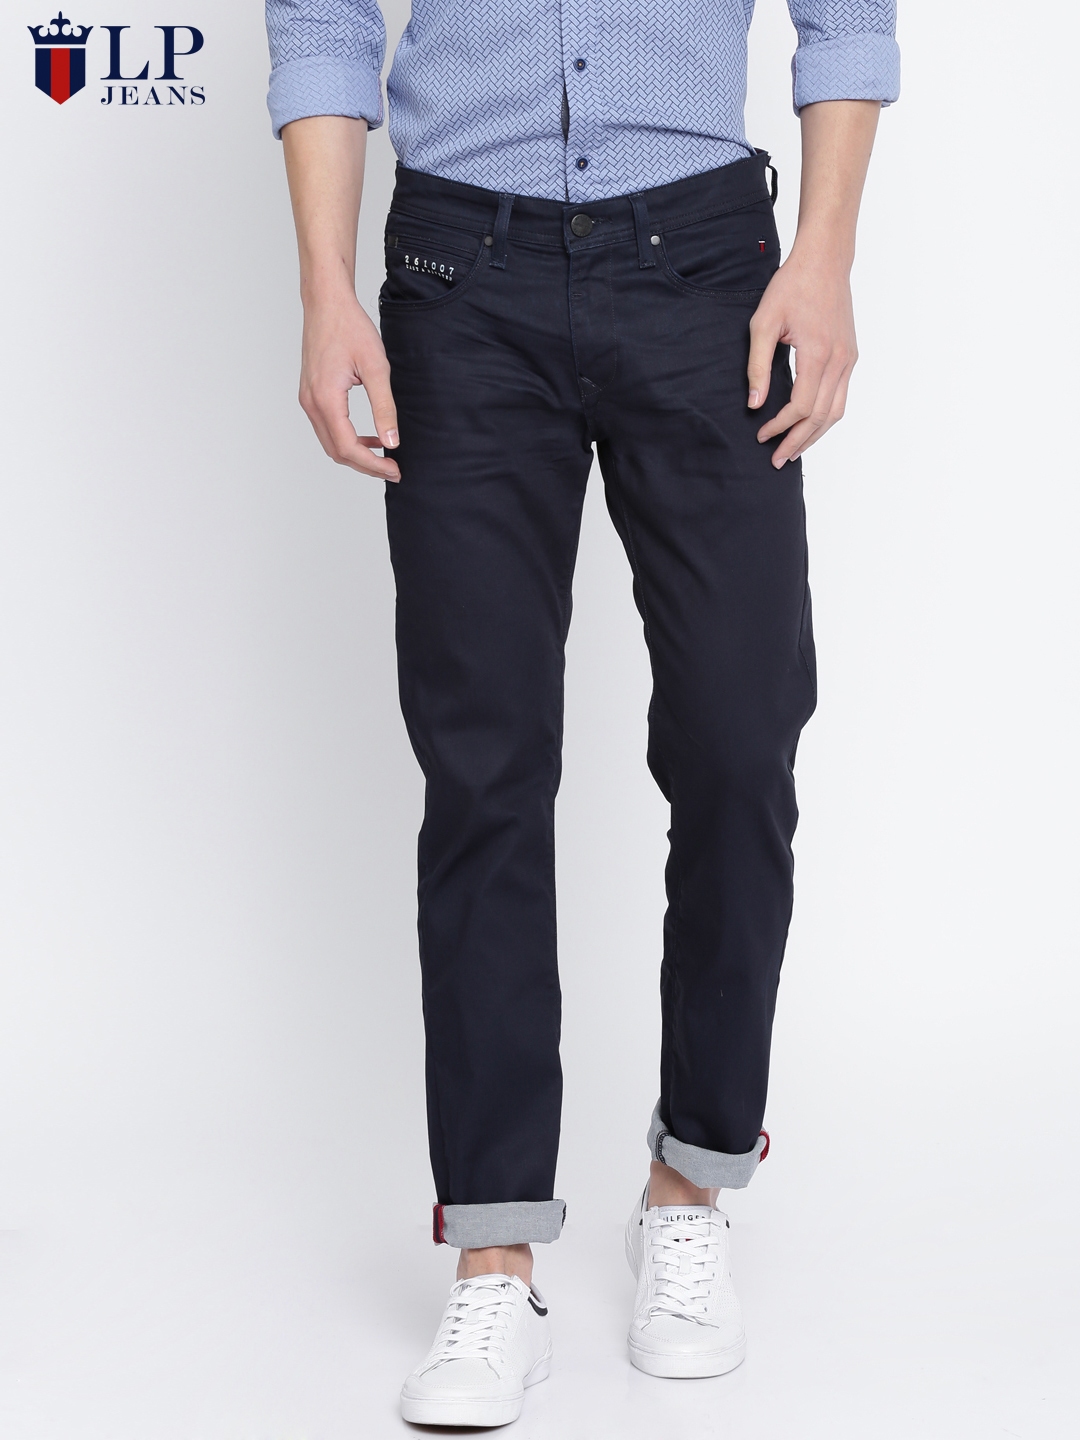 Buy Louis Philippe Jeans Men Navy Slim Fit Low Rise Clean Look ...